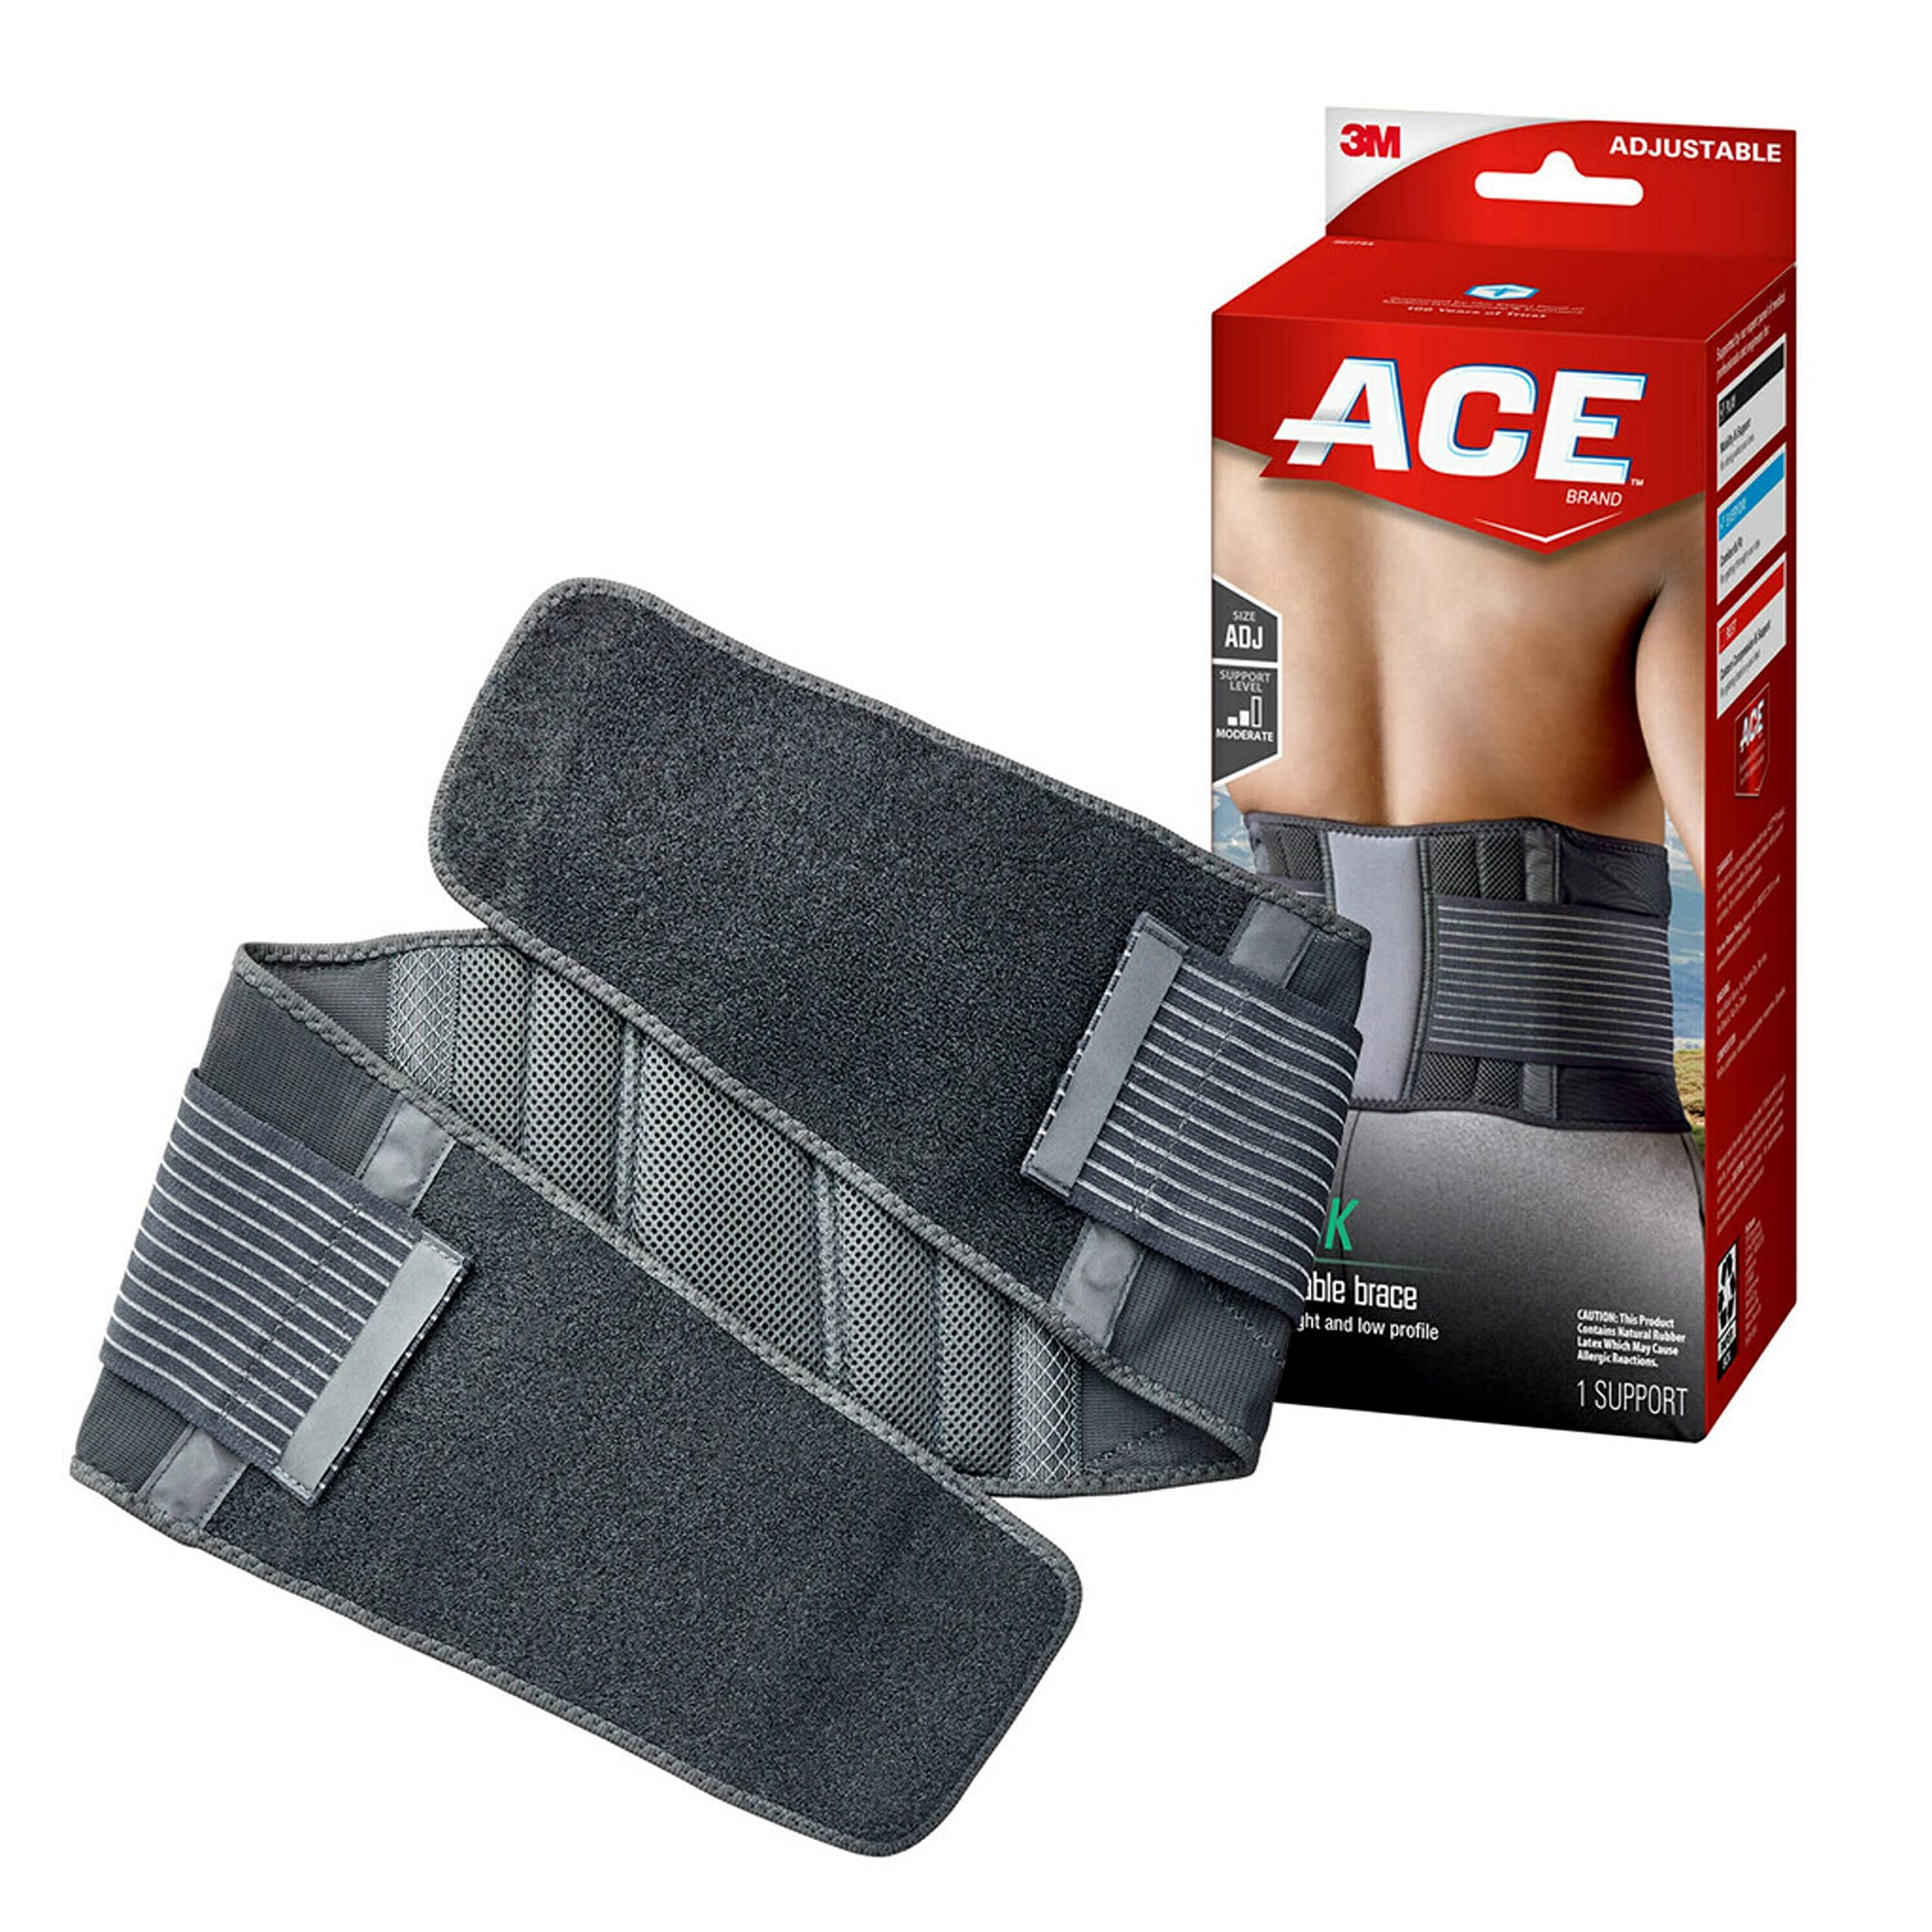 ACE Contoured Back Support, Doctor Developed, Adjustable